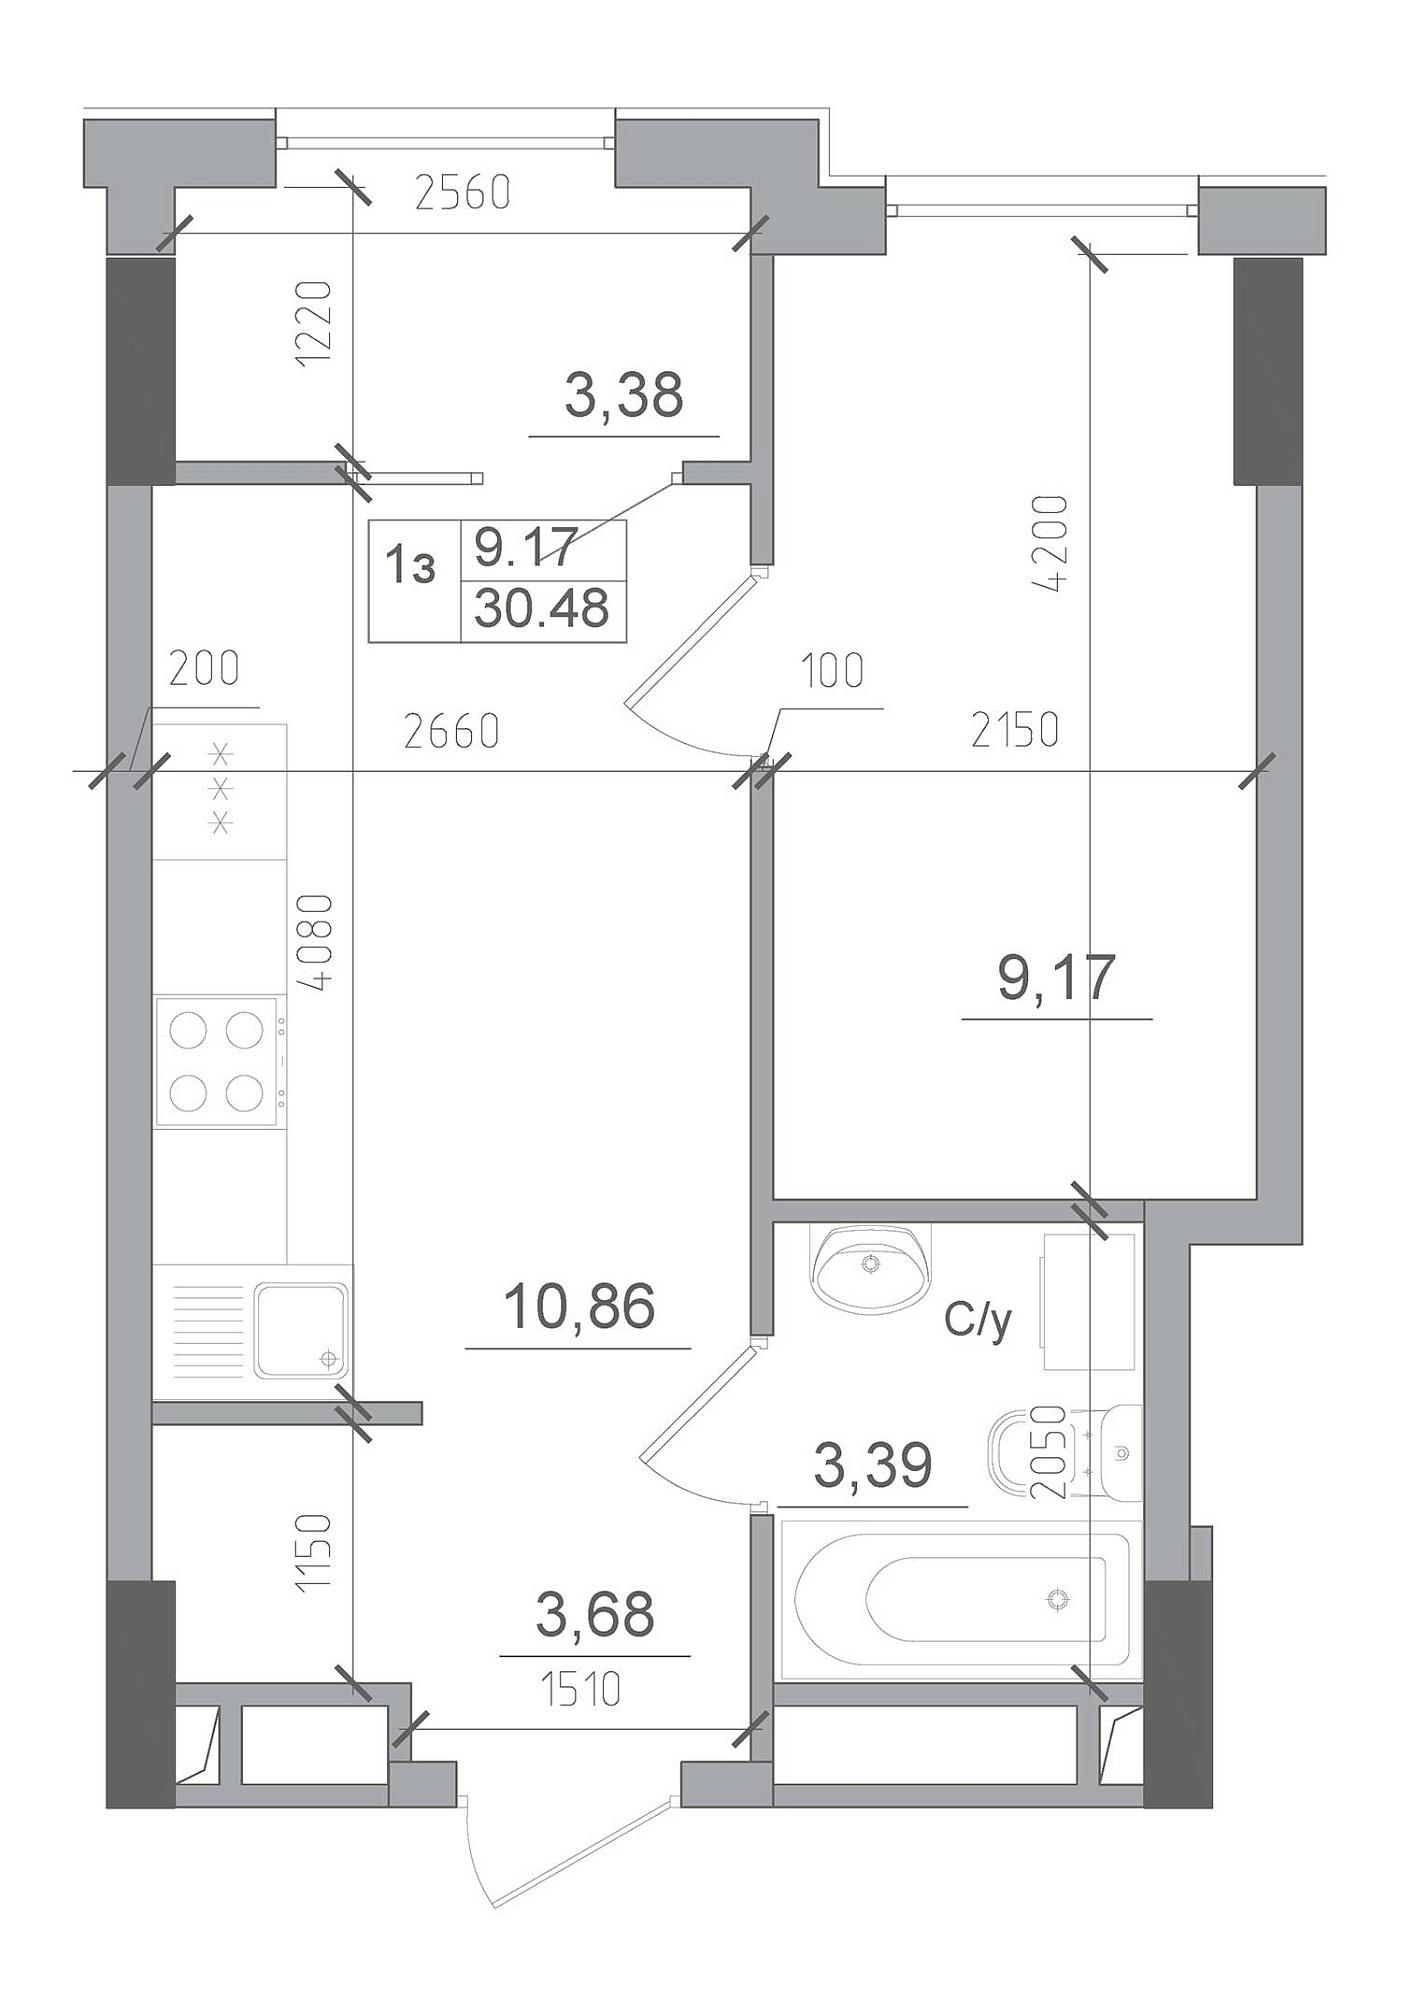 Планування 1-к квартира площею 30.48м2, AB-22-07/00013.